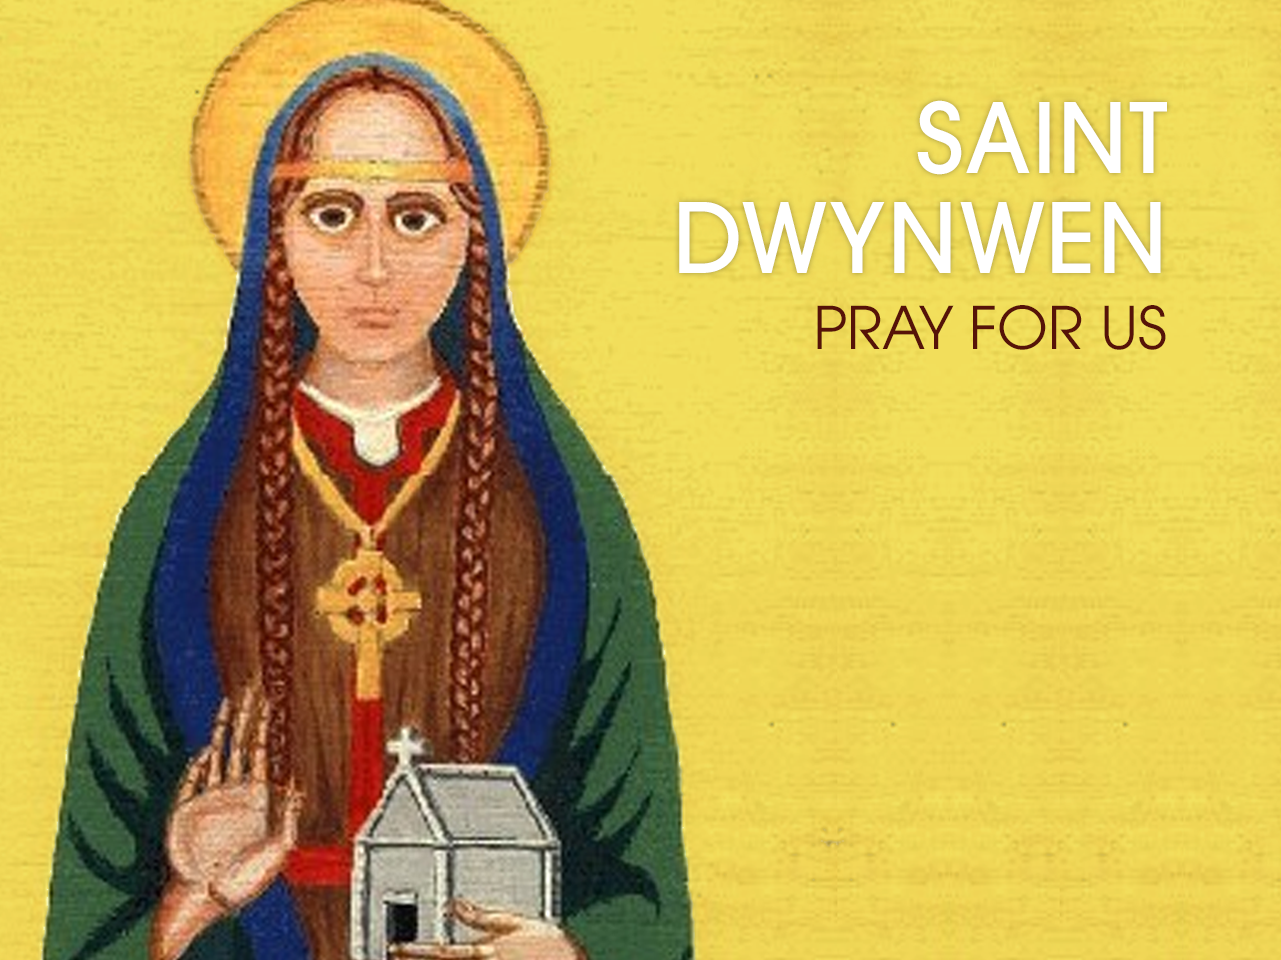 Saint Dwynwen